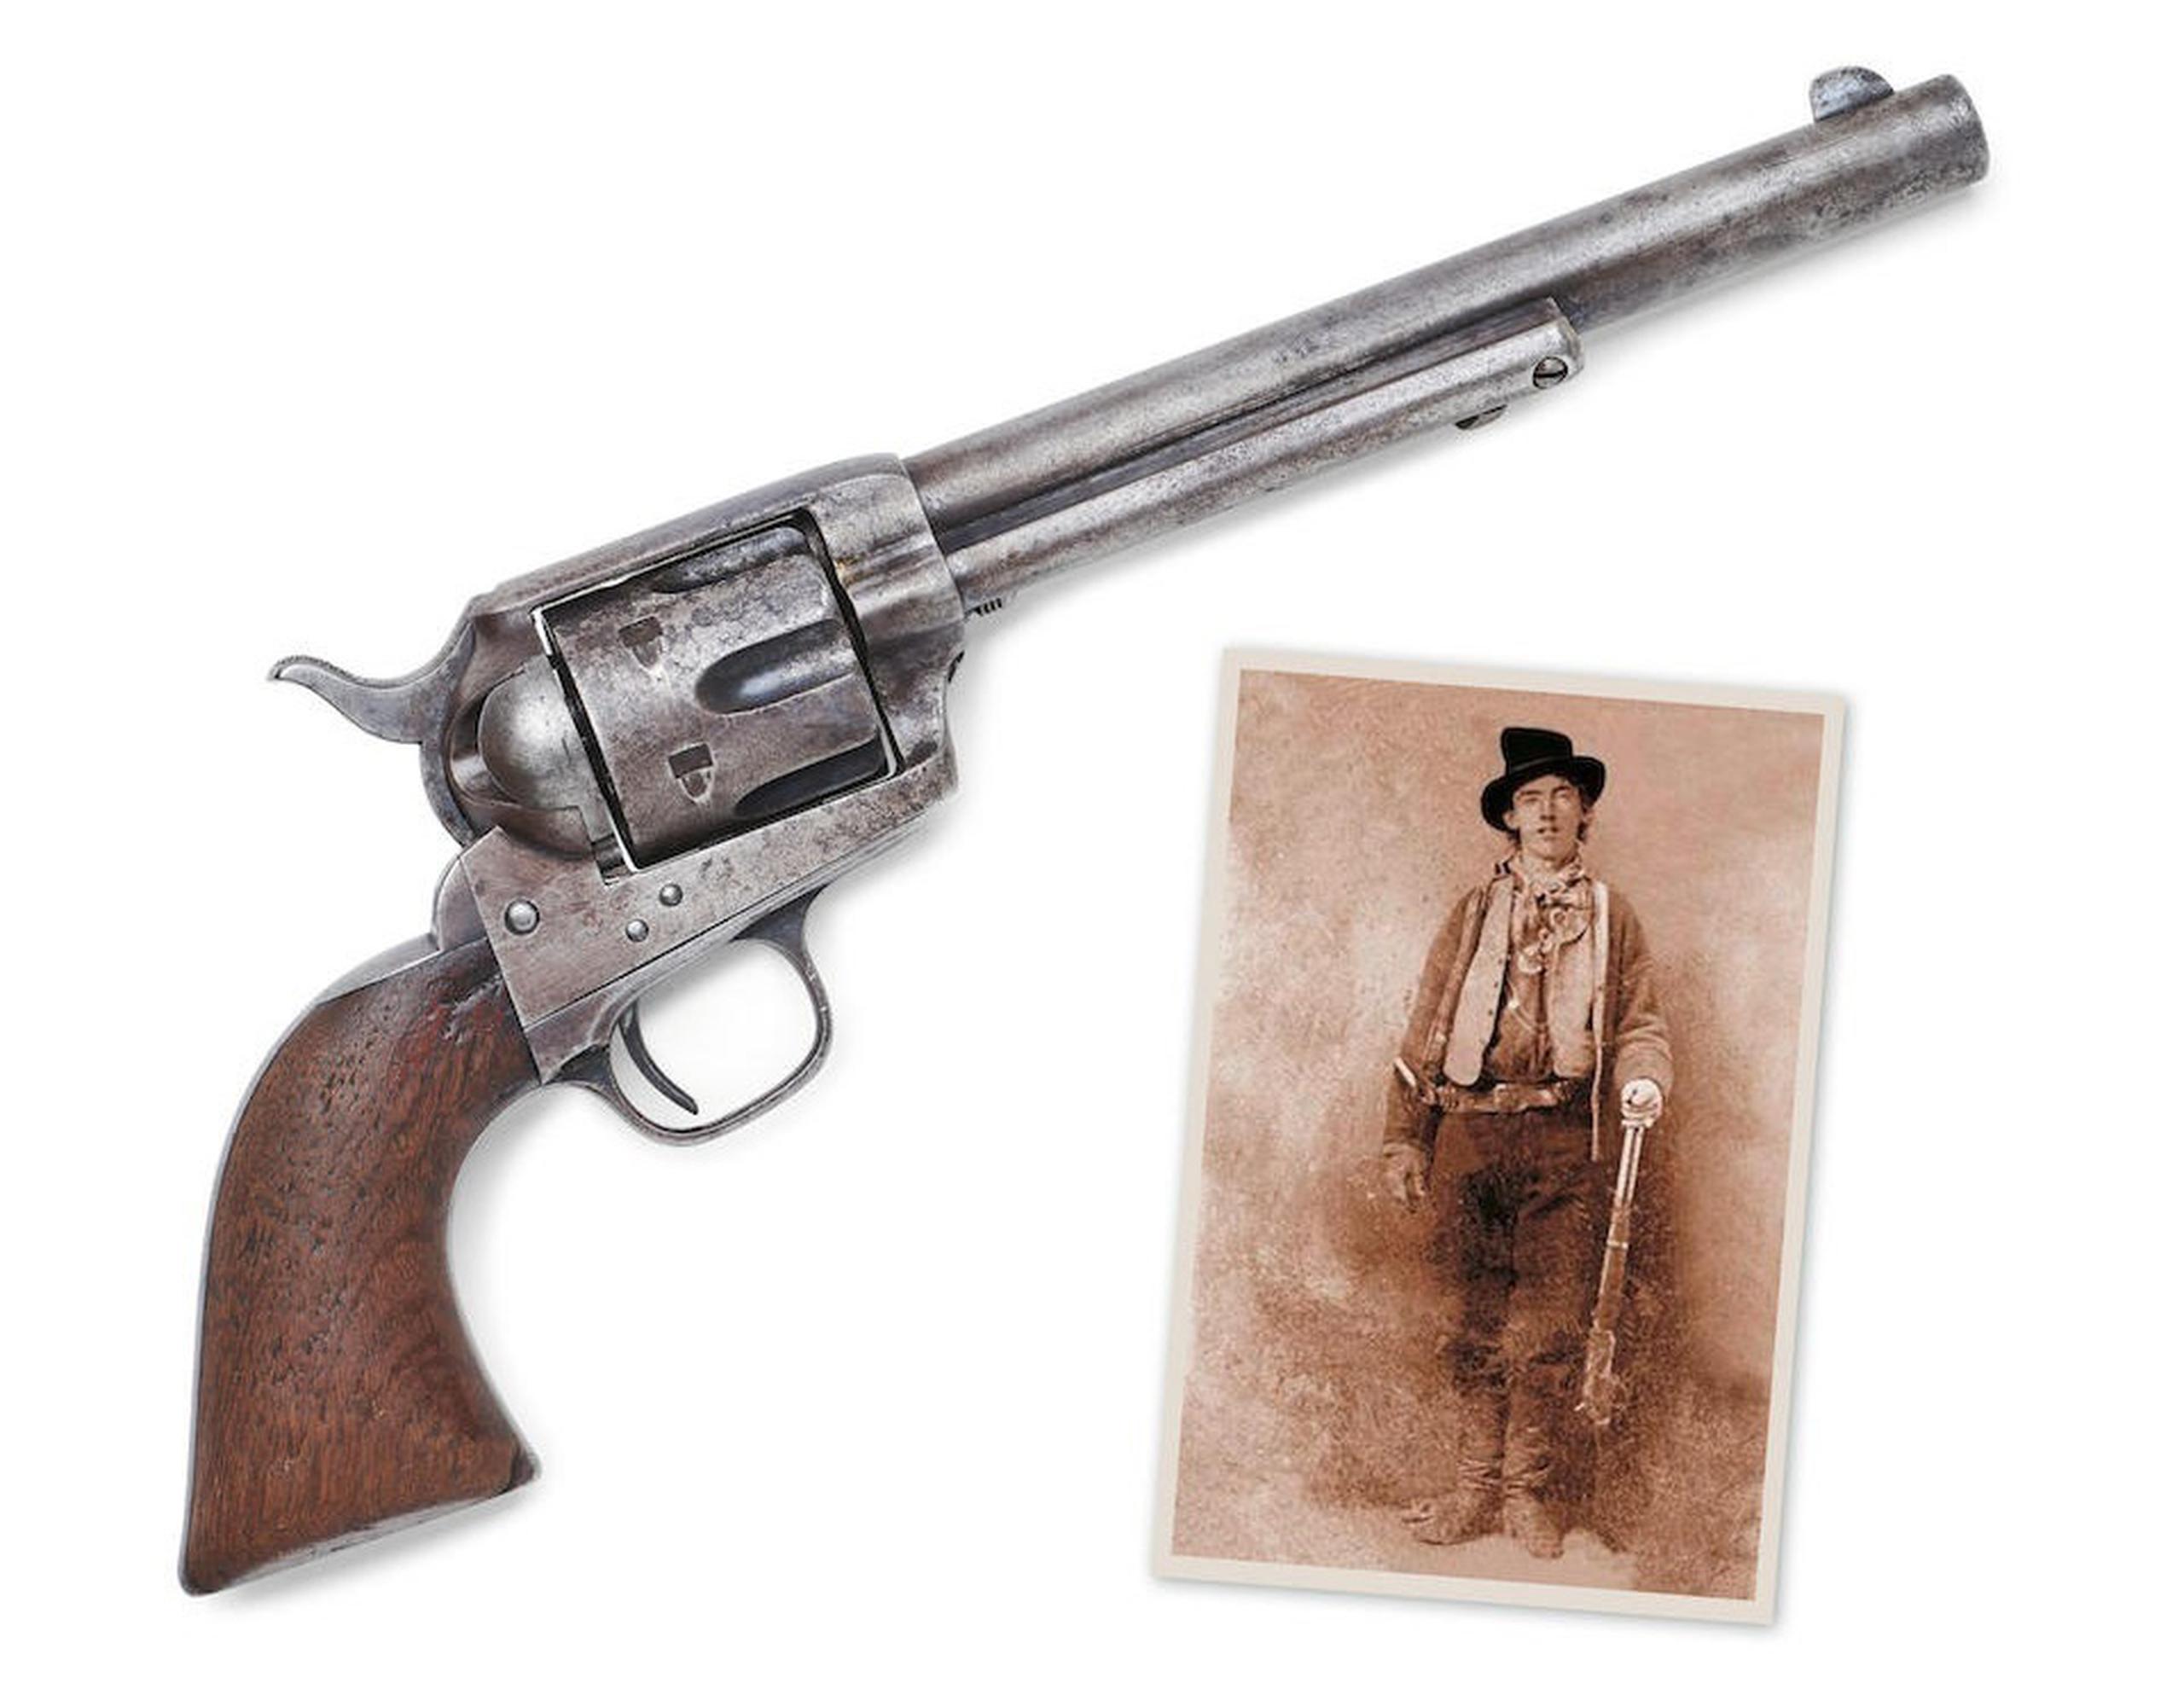 Fotografía cedida por la casa de subastas Bonhams donde se muestra la pistola Colt calibre 7 1/2 fabricada en 1880 con que el alguacil Pat Garrett mató a Billy the Kid (imagen a la dercha).  EFE/Bonhams